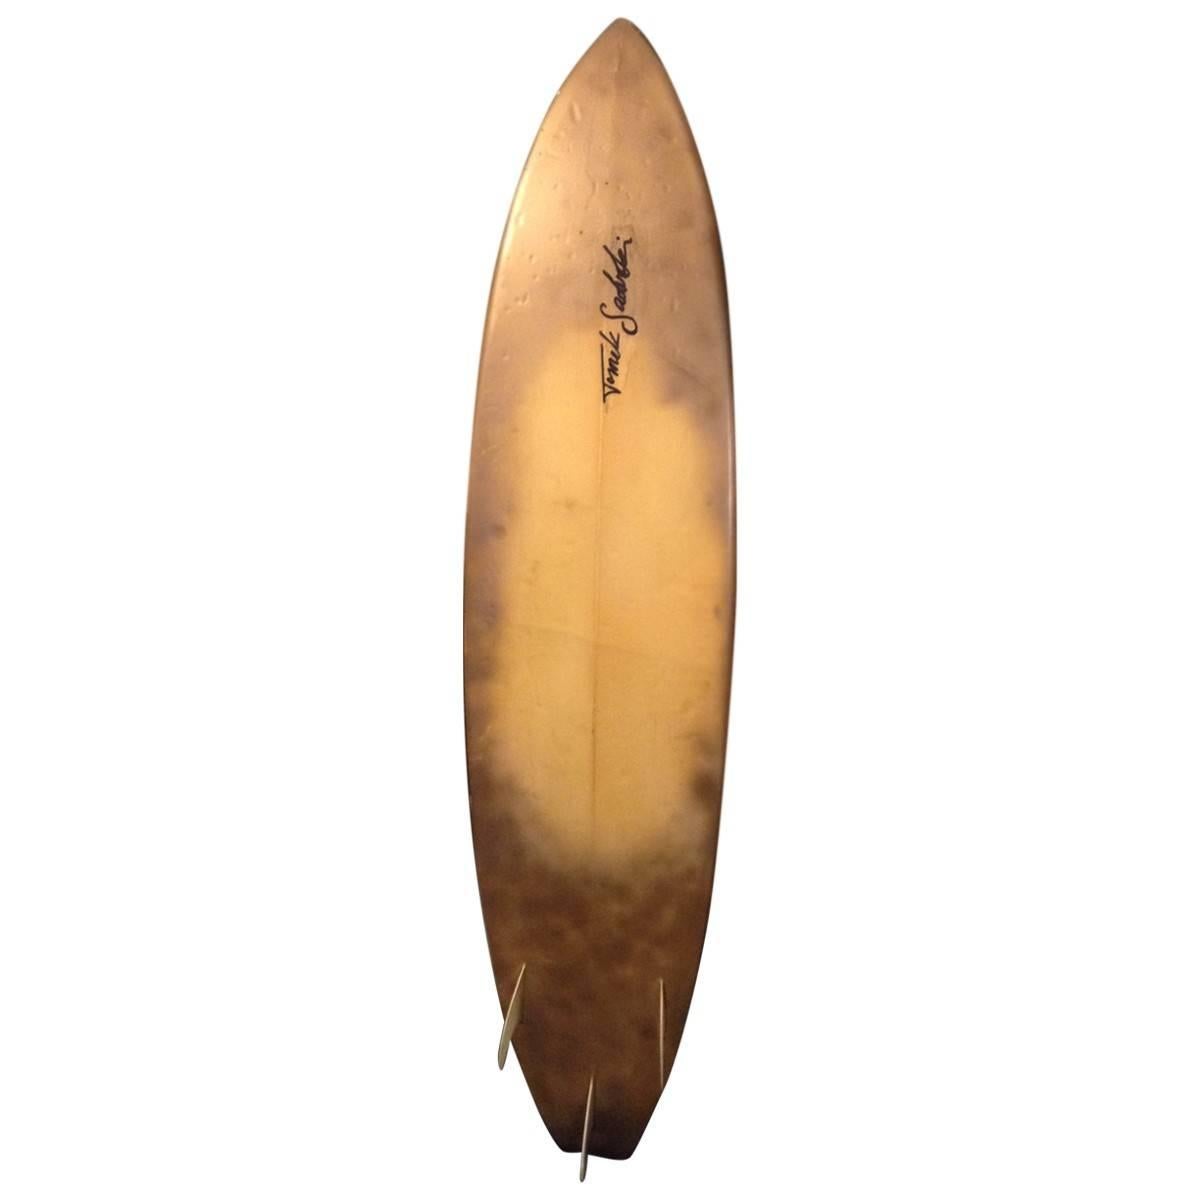 Tomek Sadurski Hand-Painted Feather Surfboard 1